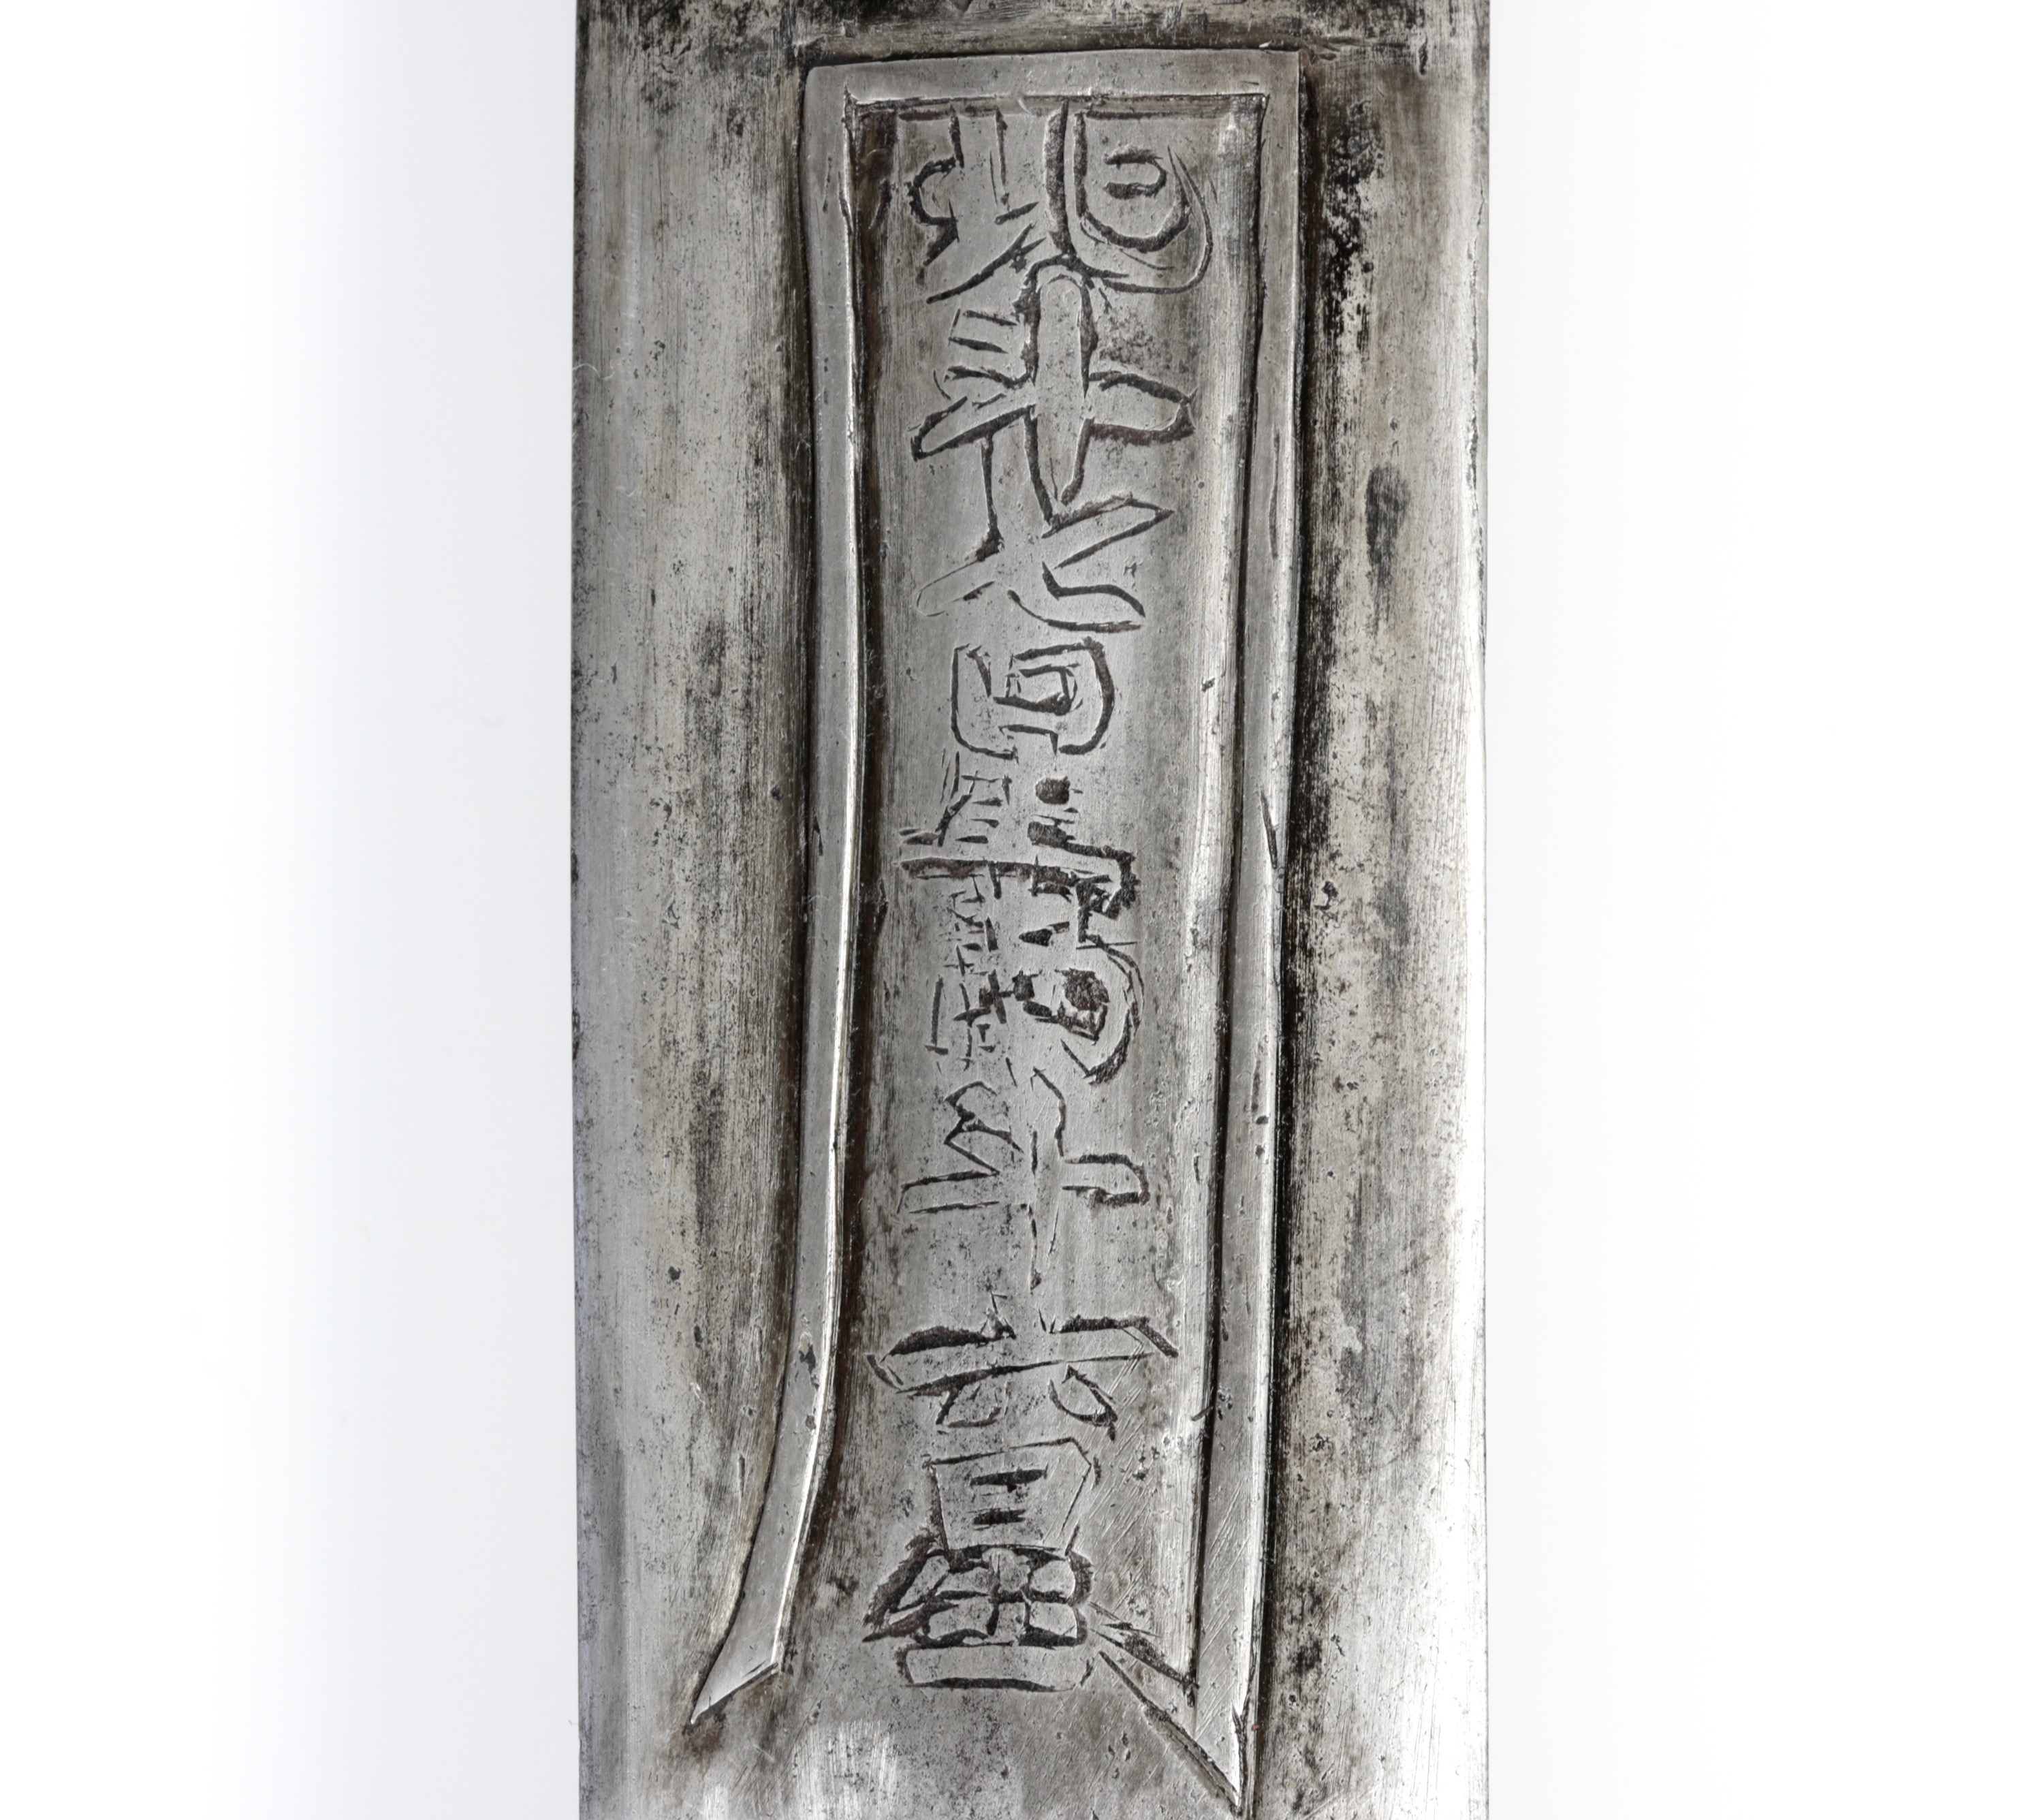 Inscription on daoist jian